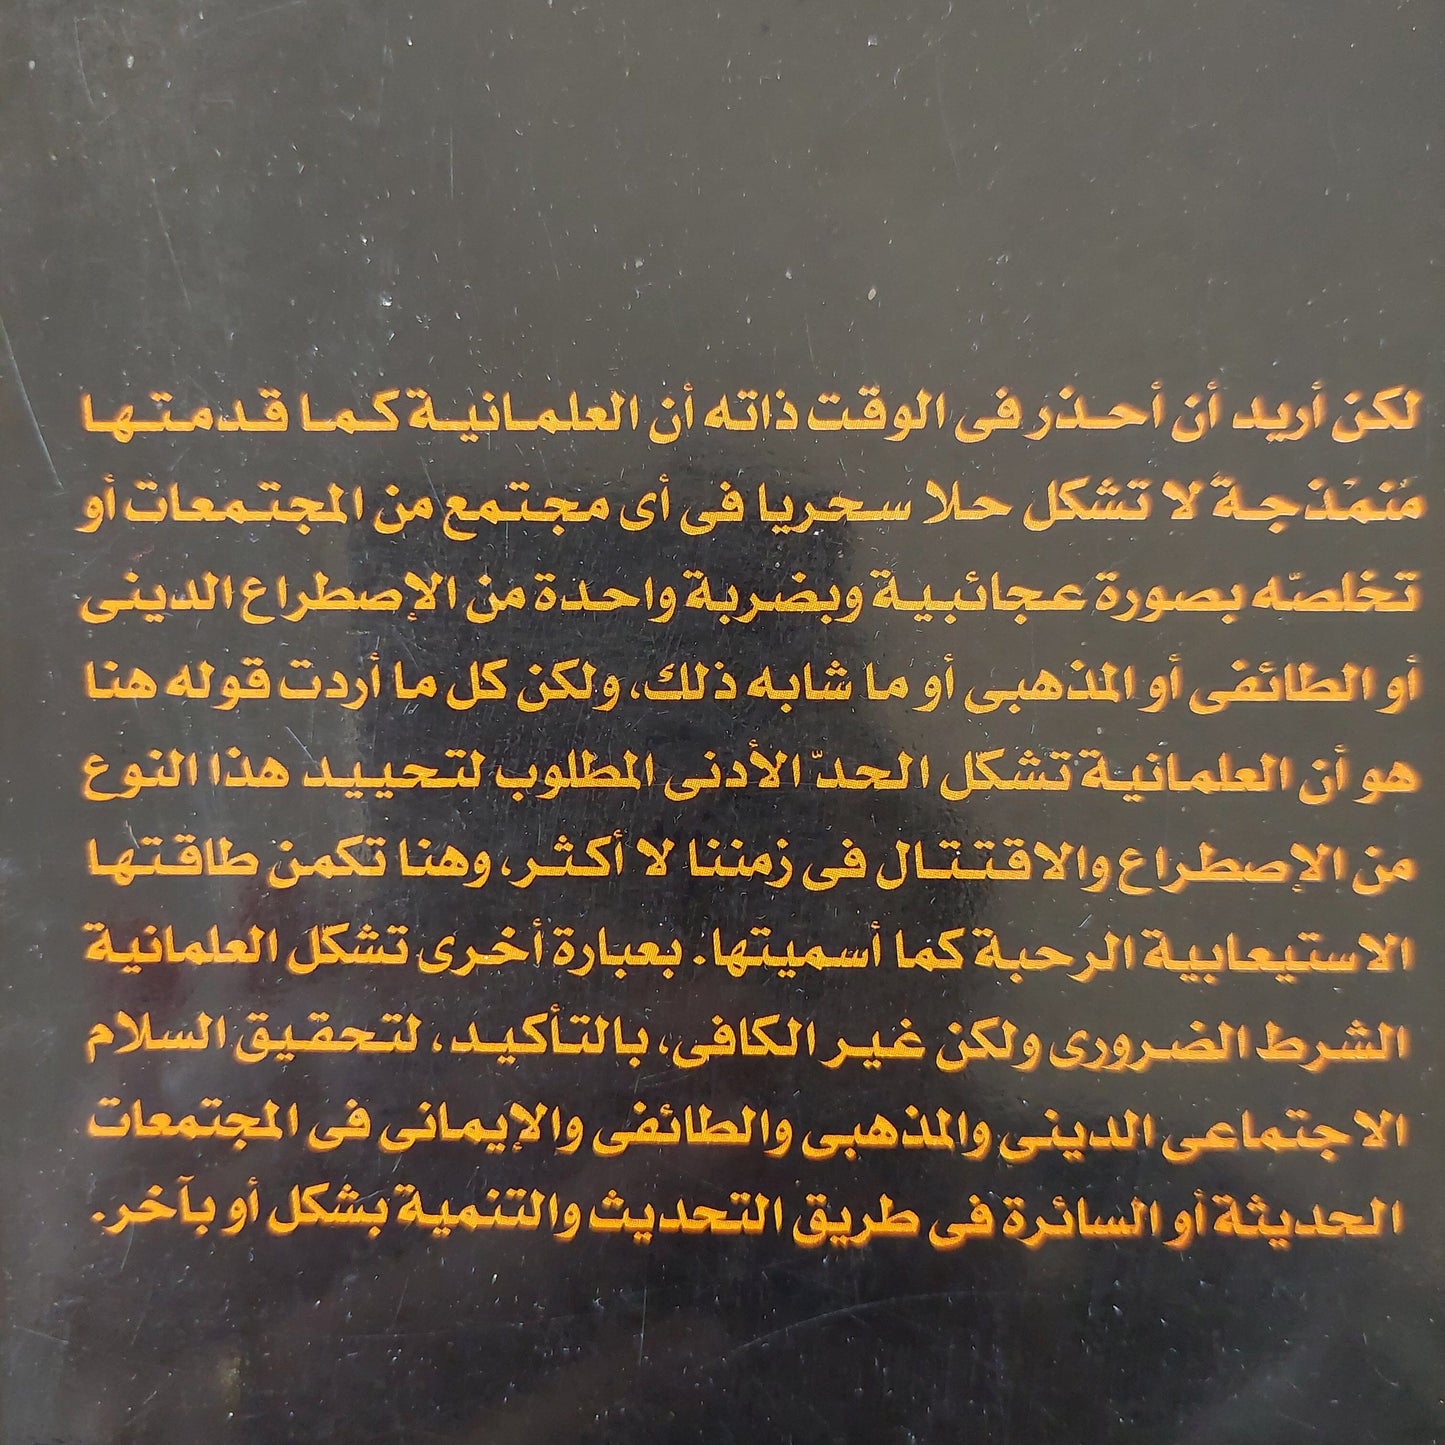 العلمانية والمجتمع المدني - د. صادق جلال العظم كتاب المكتبة الفلسفية 